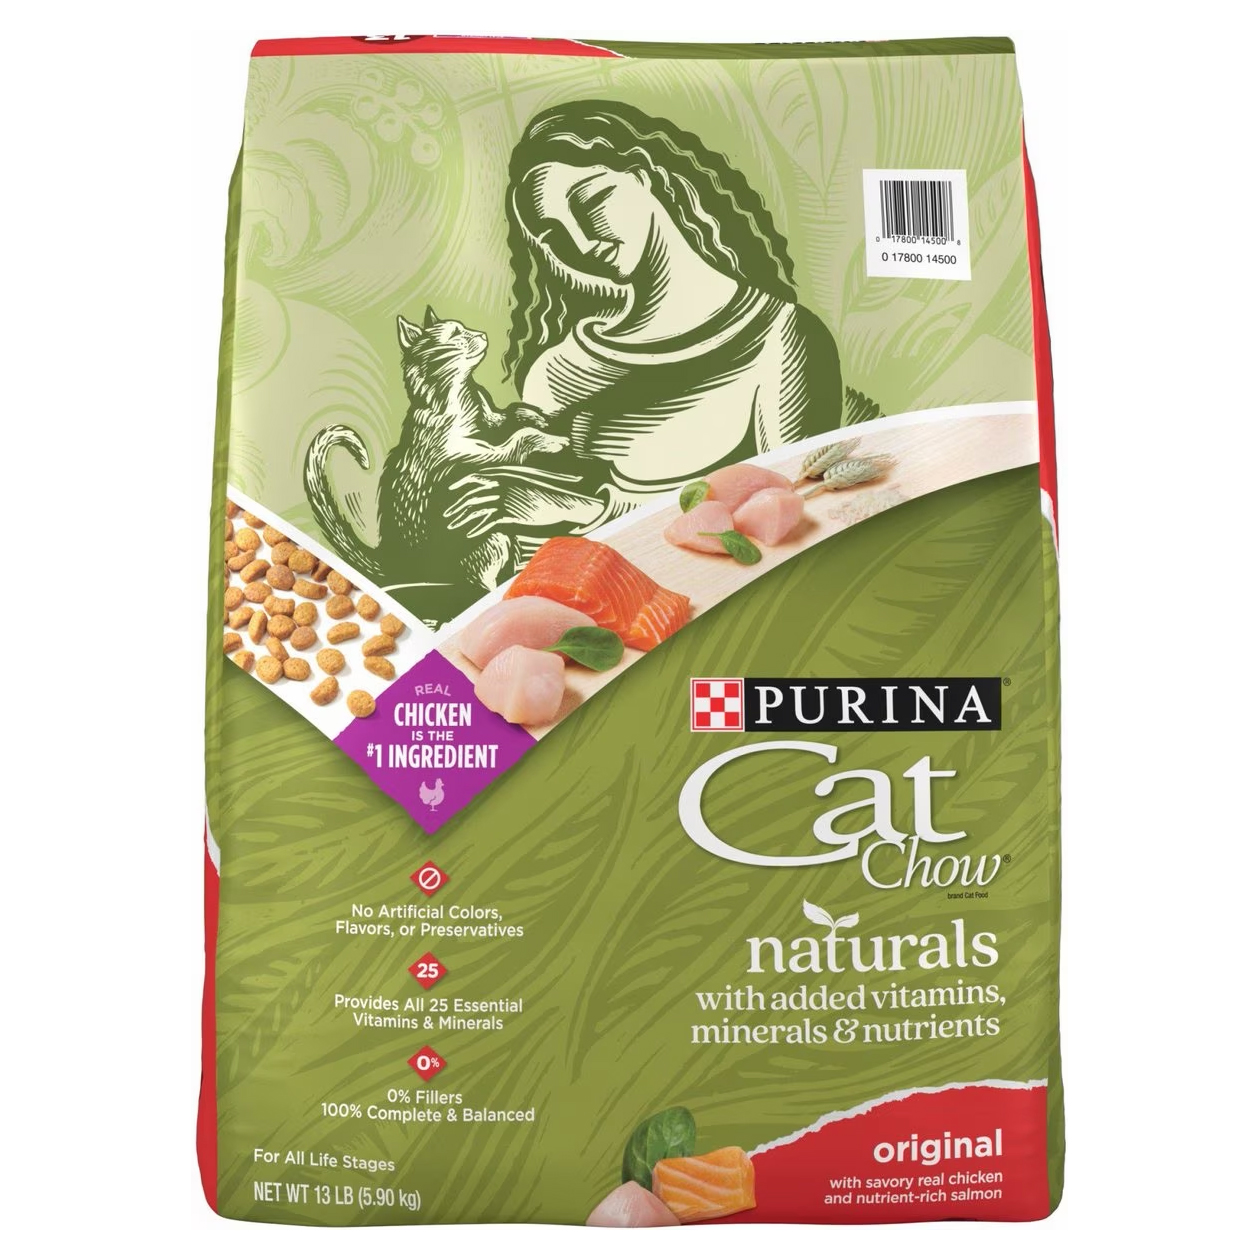 Purina Cat Chow Naturals Original